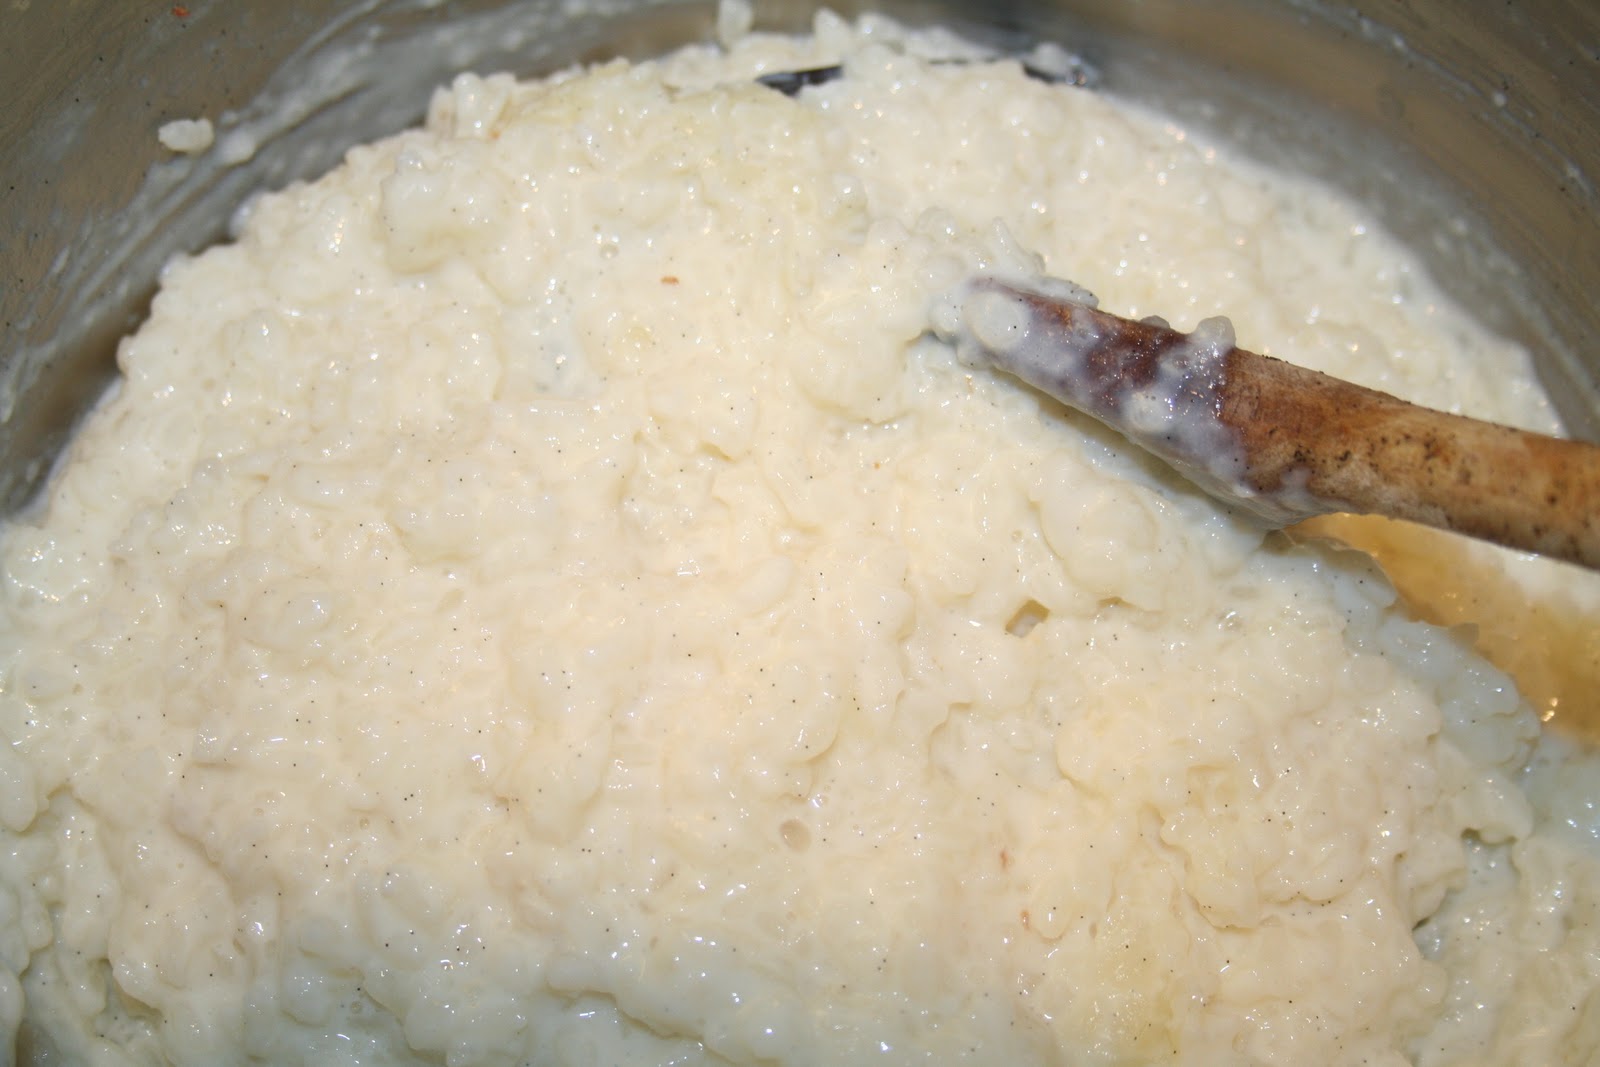 Riz au lait au micro-ondes — BLOG BRANDT